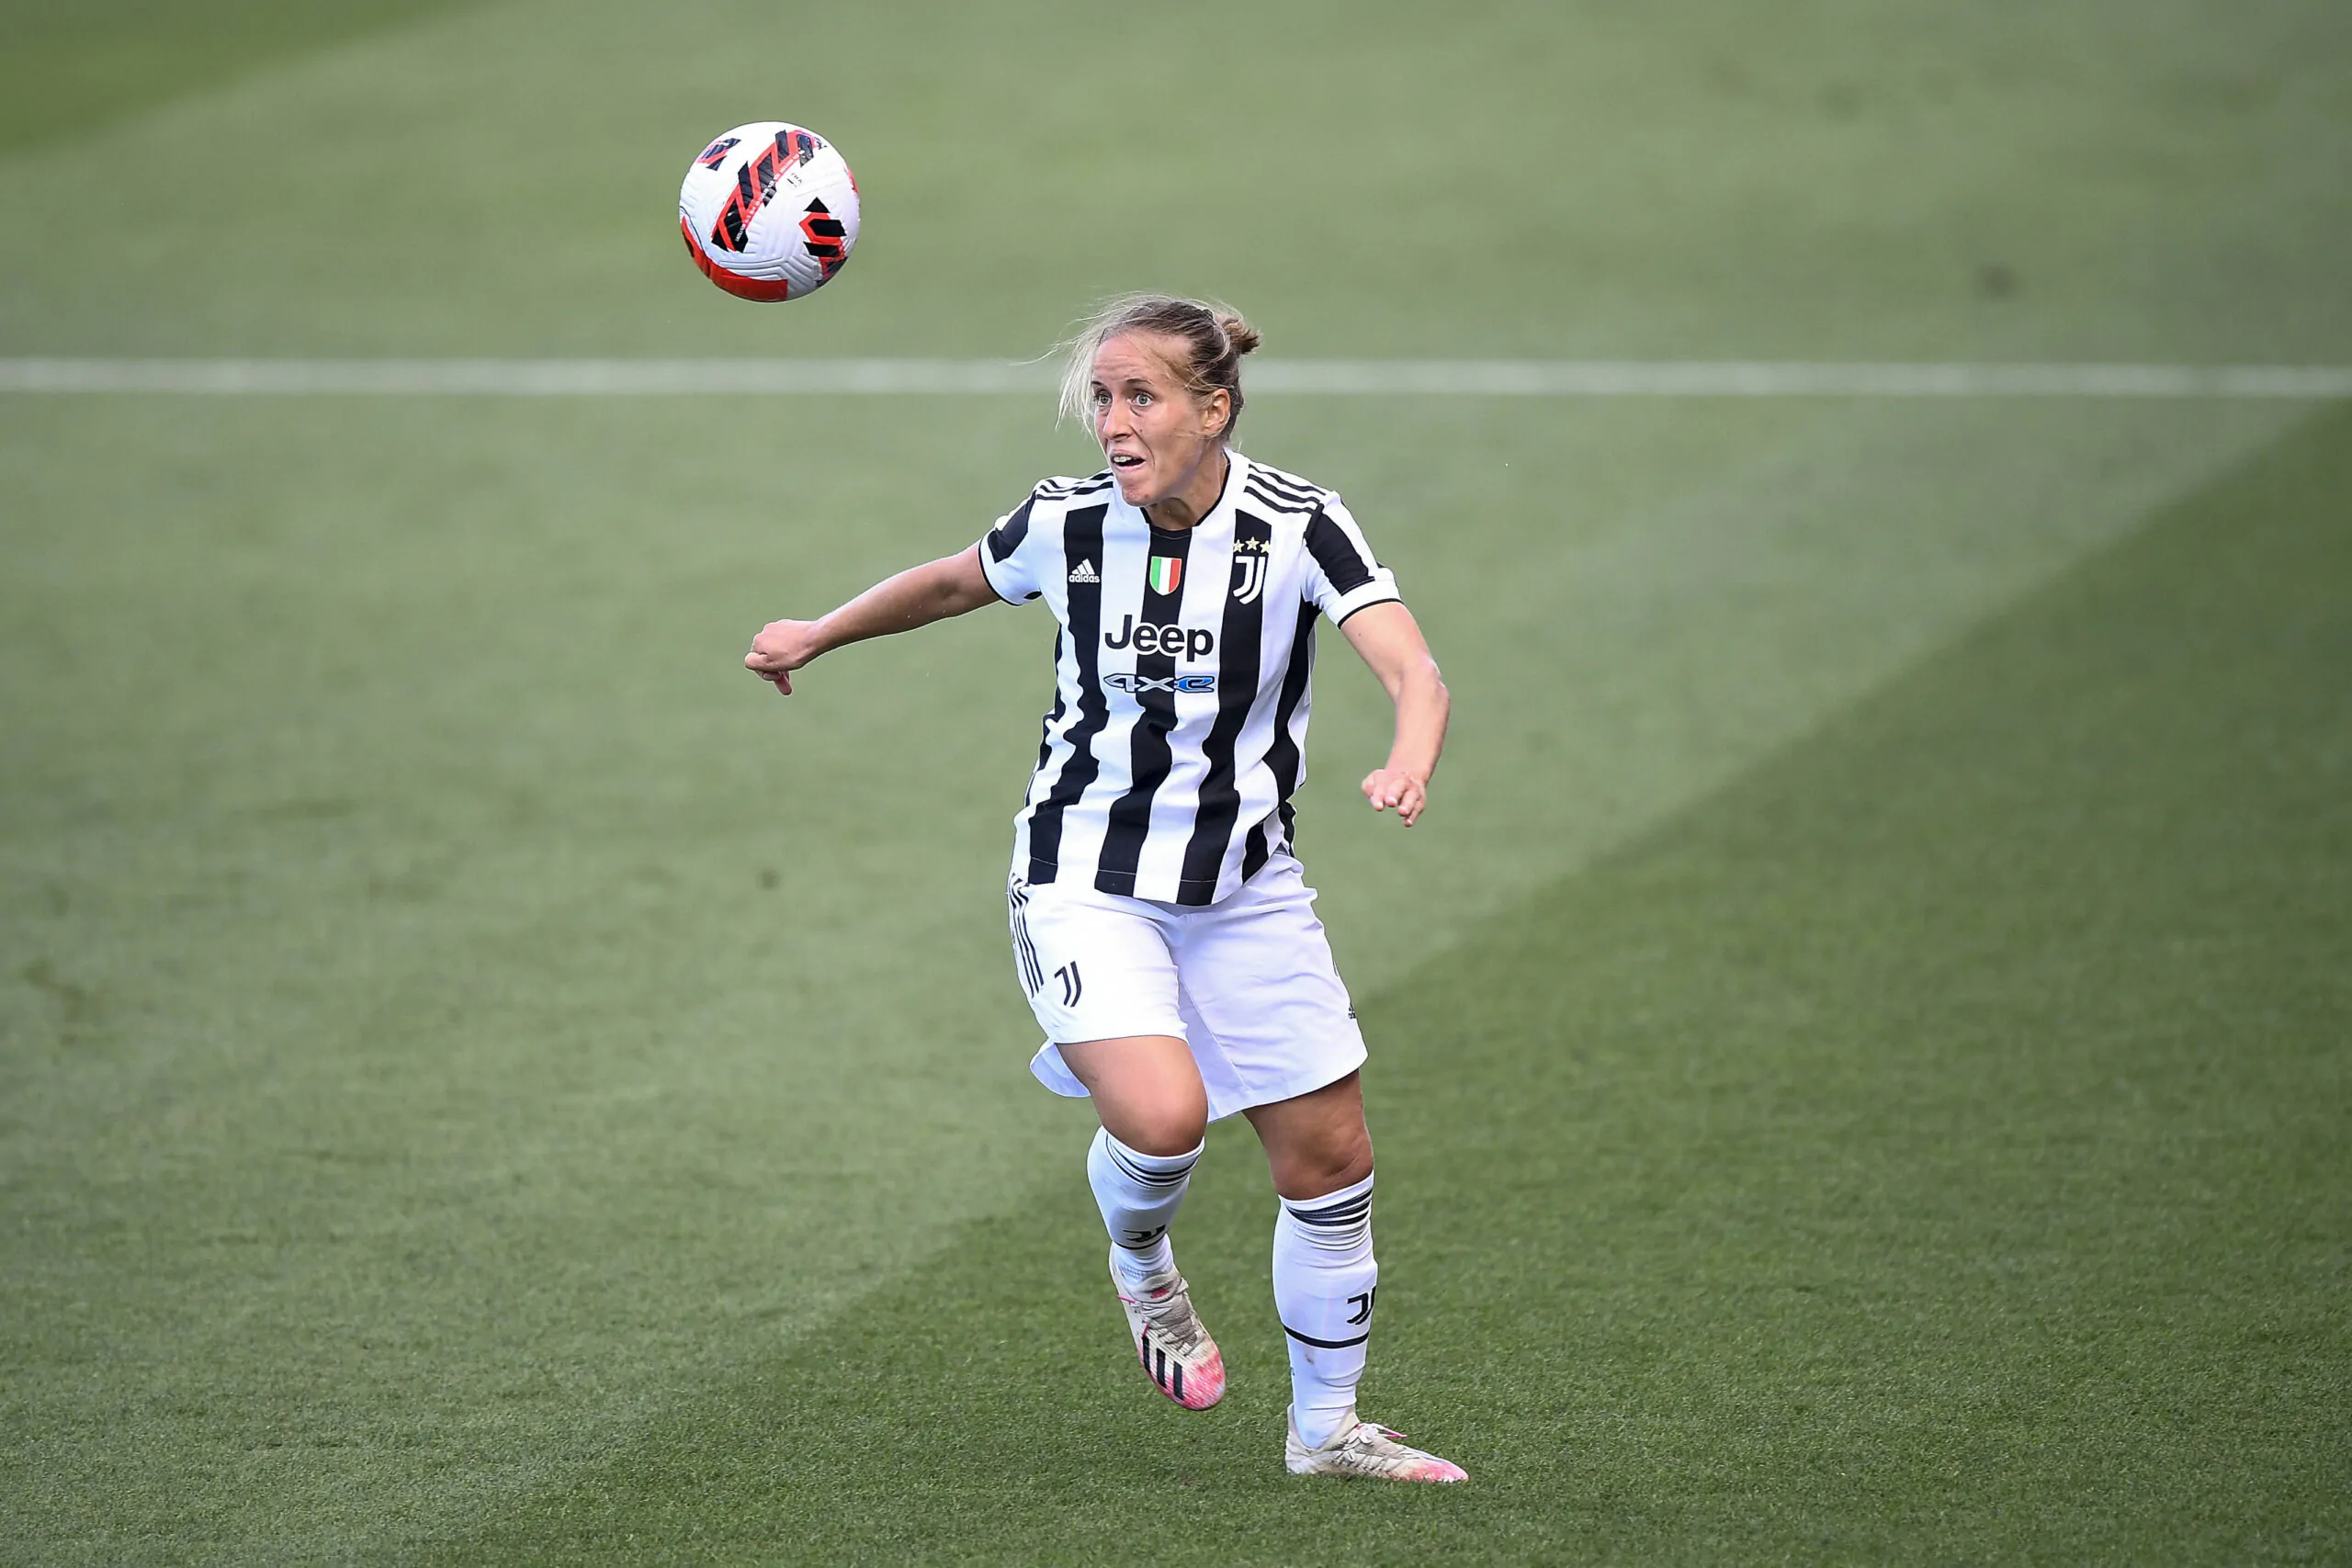 Juventus Women-Pomigliano alla prima giornata, c’è la novità